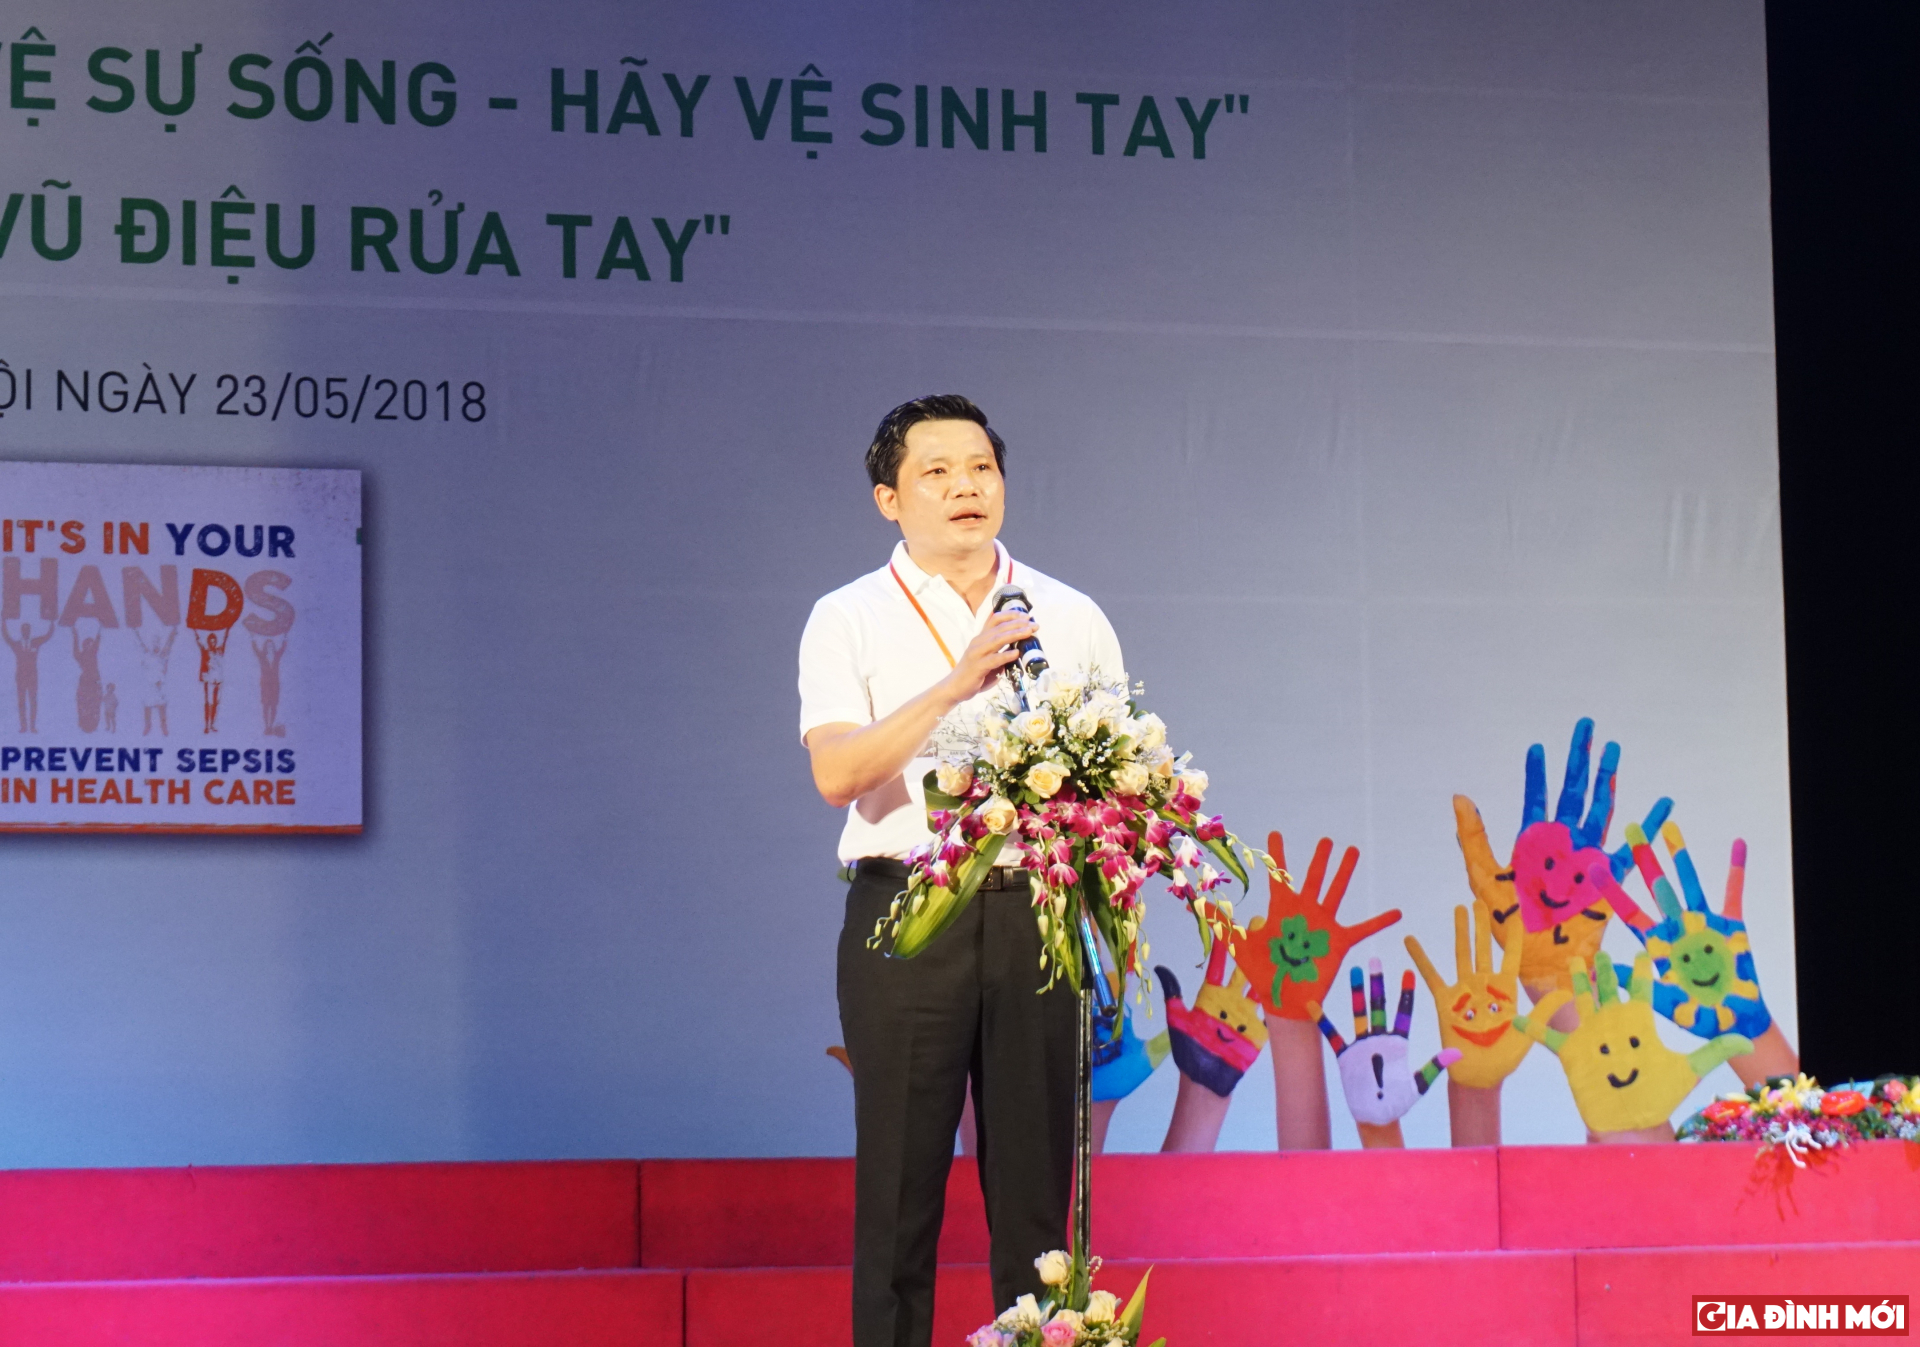 PGS. TS Nguyễn Duy Ánh - Giám đốc Bệnh viện Phụ sản Hà Nội phát động chương trình 